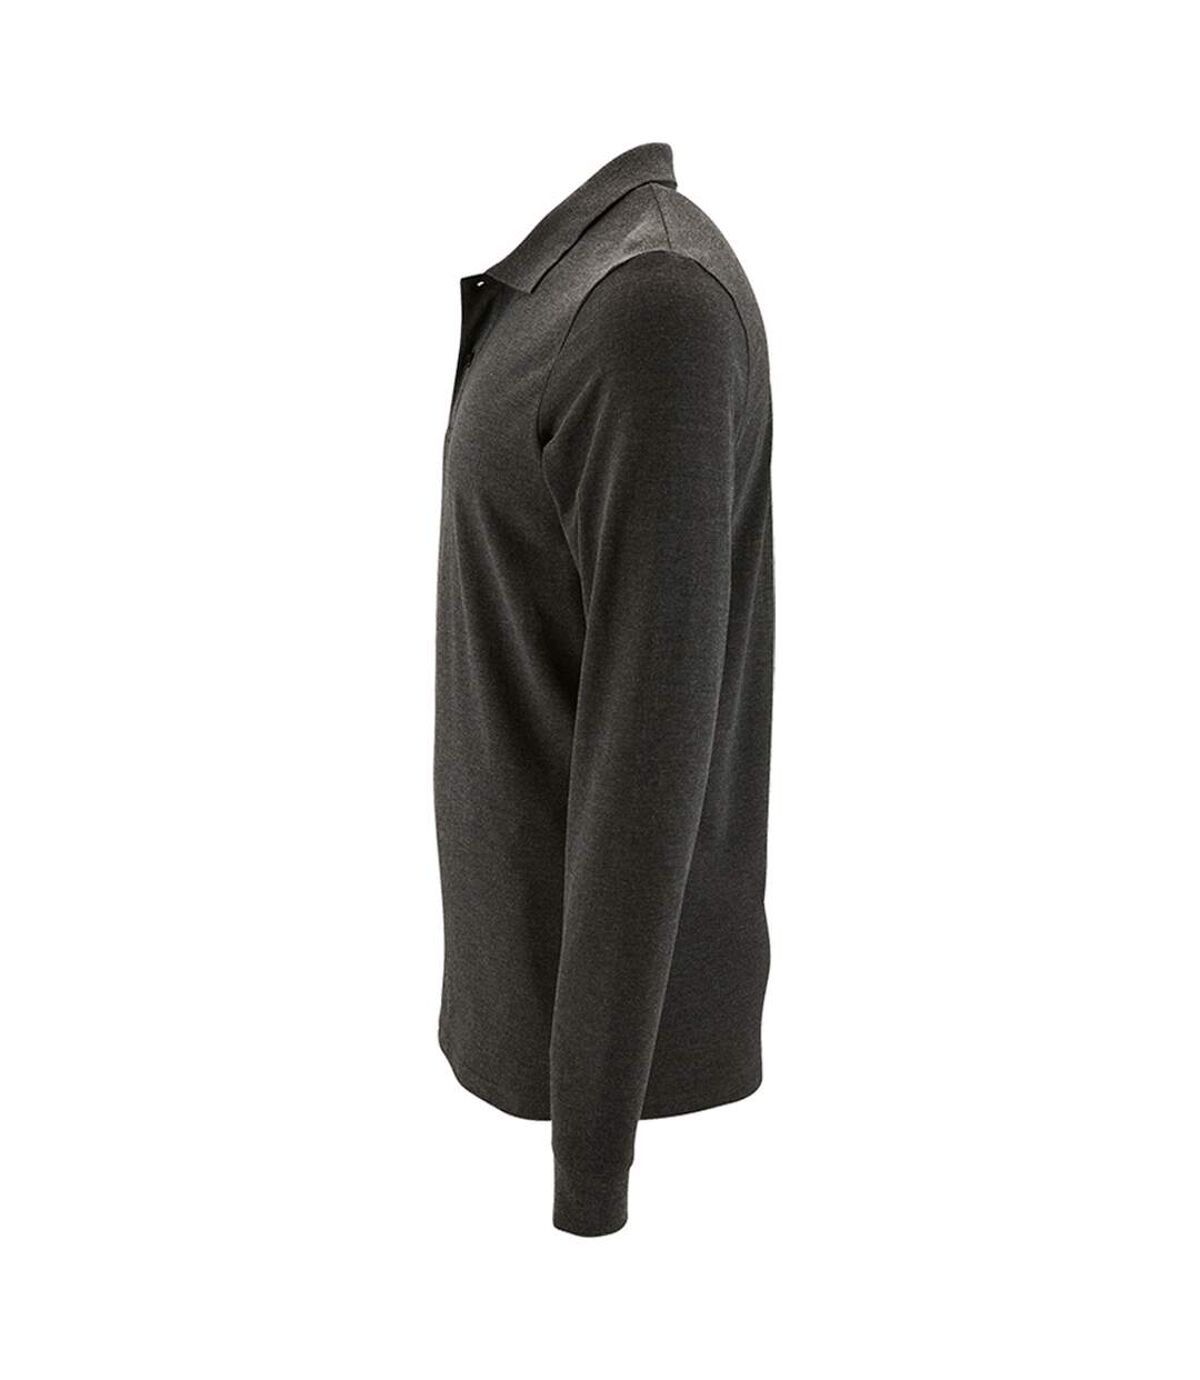 SOLS Mens Perfect Long Sleeve Pique Polo Shirt (Charcoal Marl)